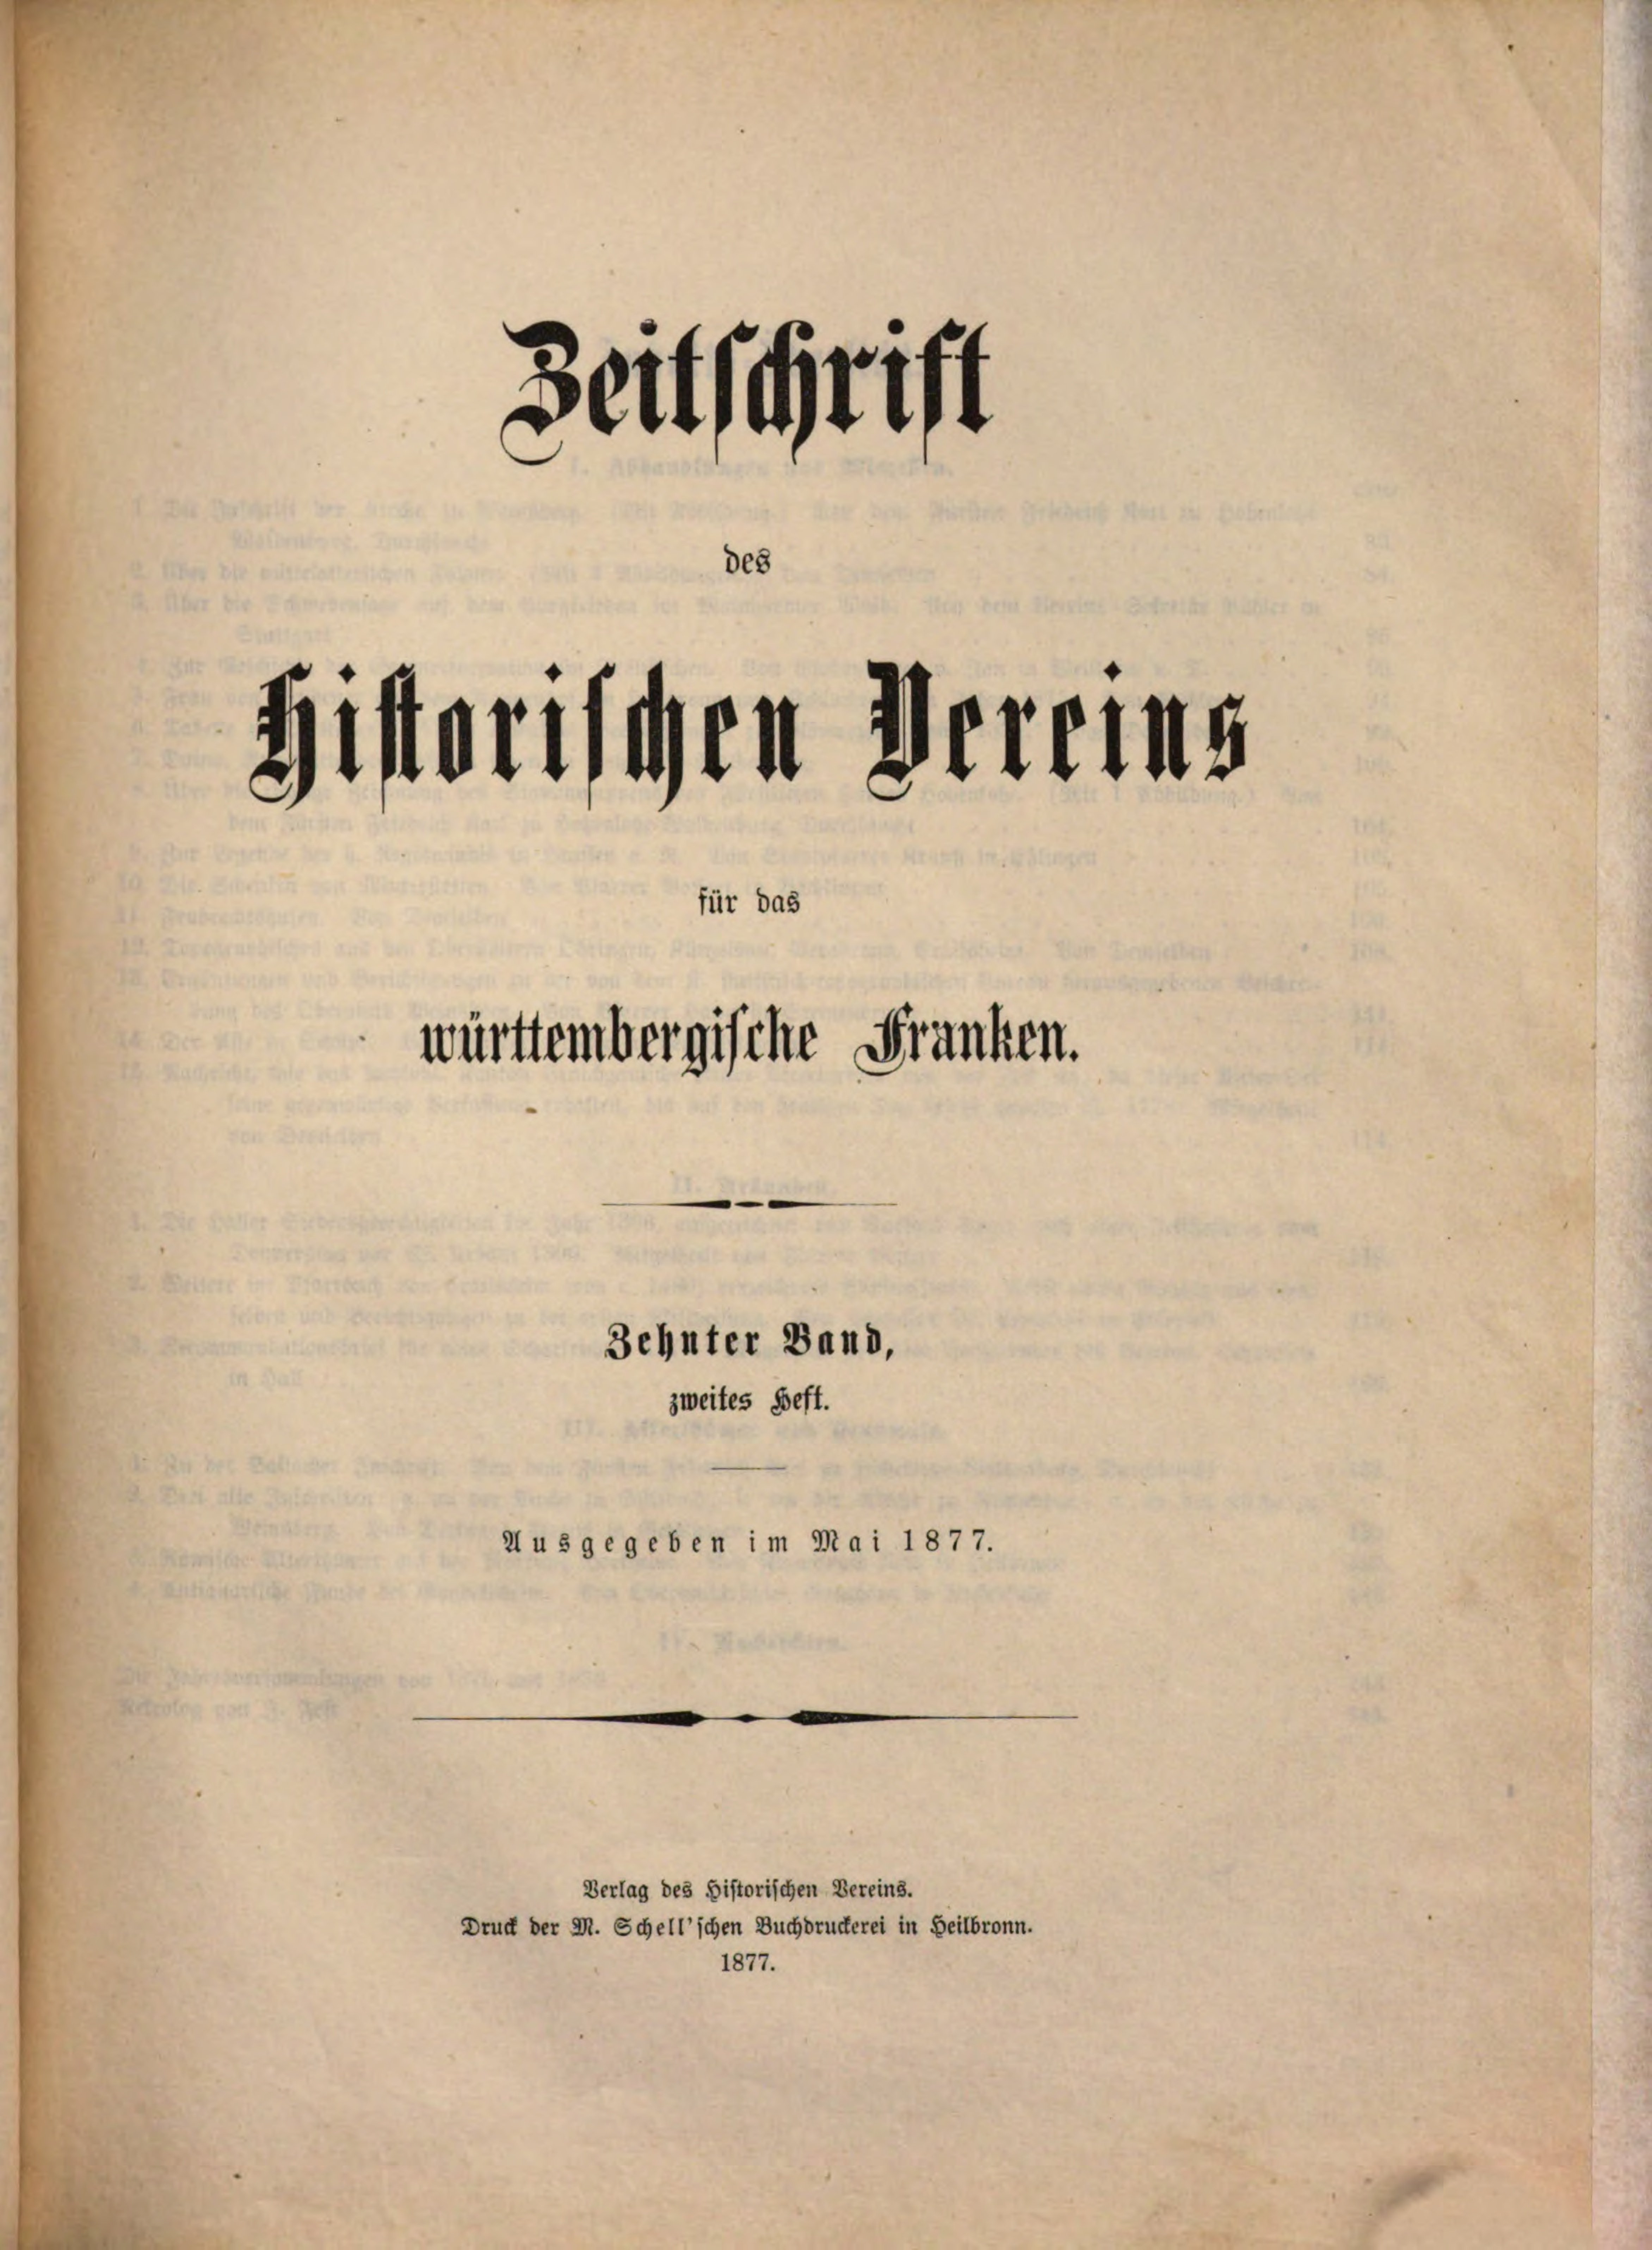                     Ansehen Bd. 10 Nr. 2 (1877): Zeitschrift des Historischen Vereins für das Württembergische Franken
                